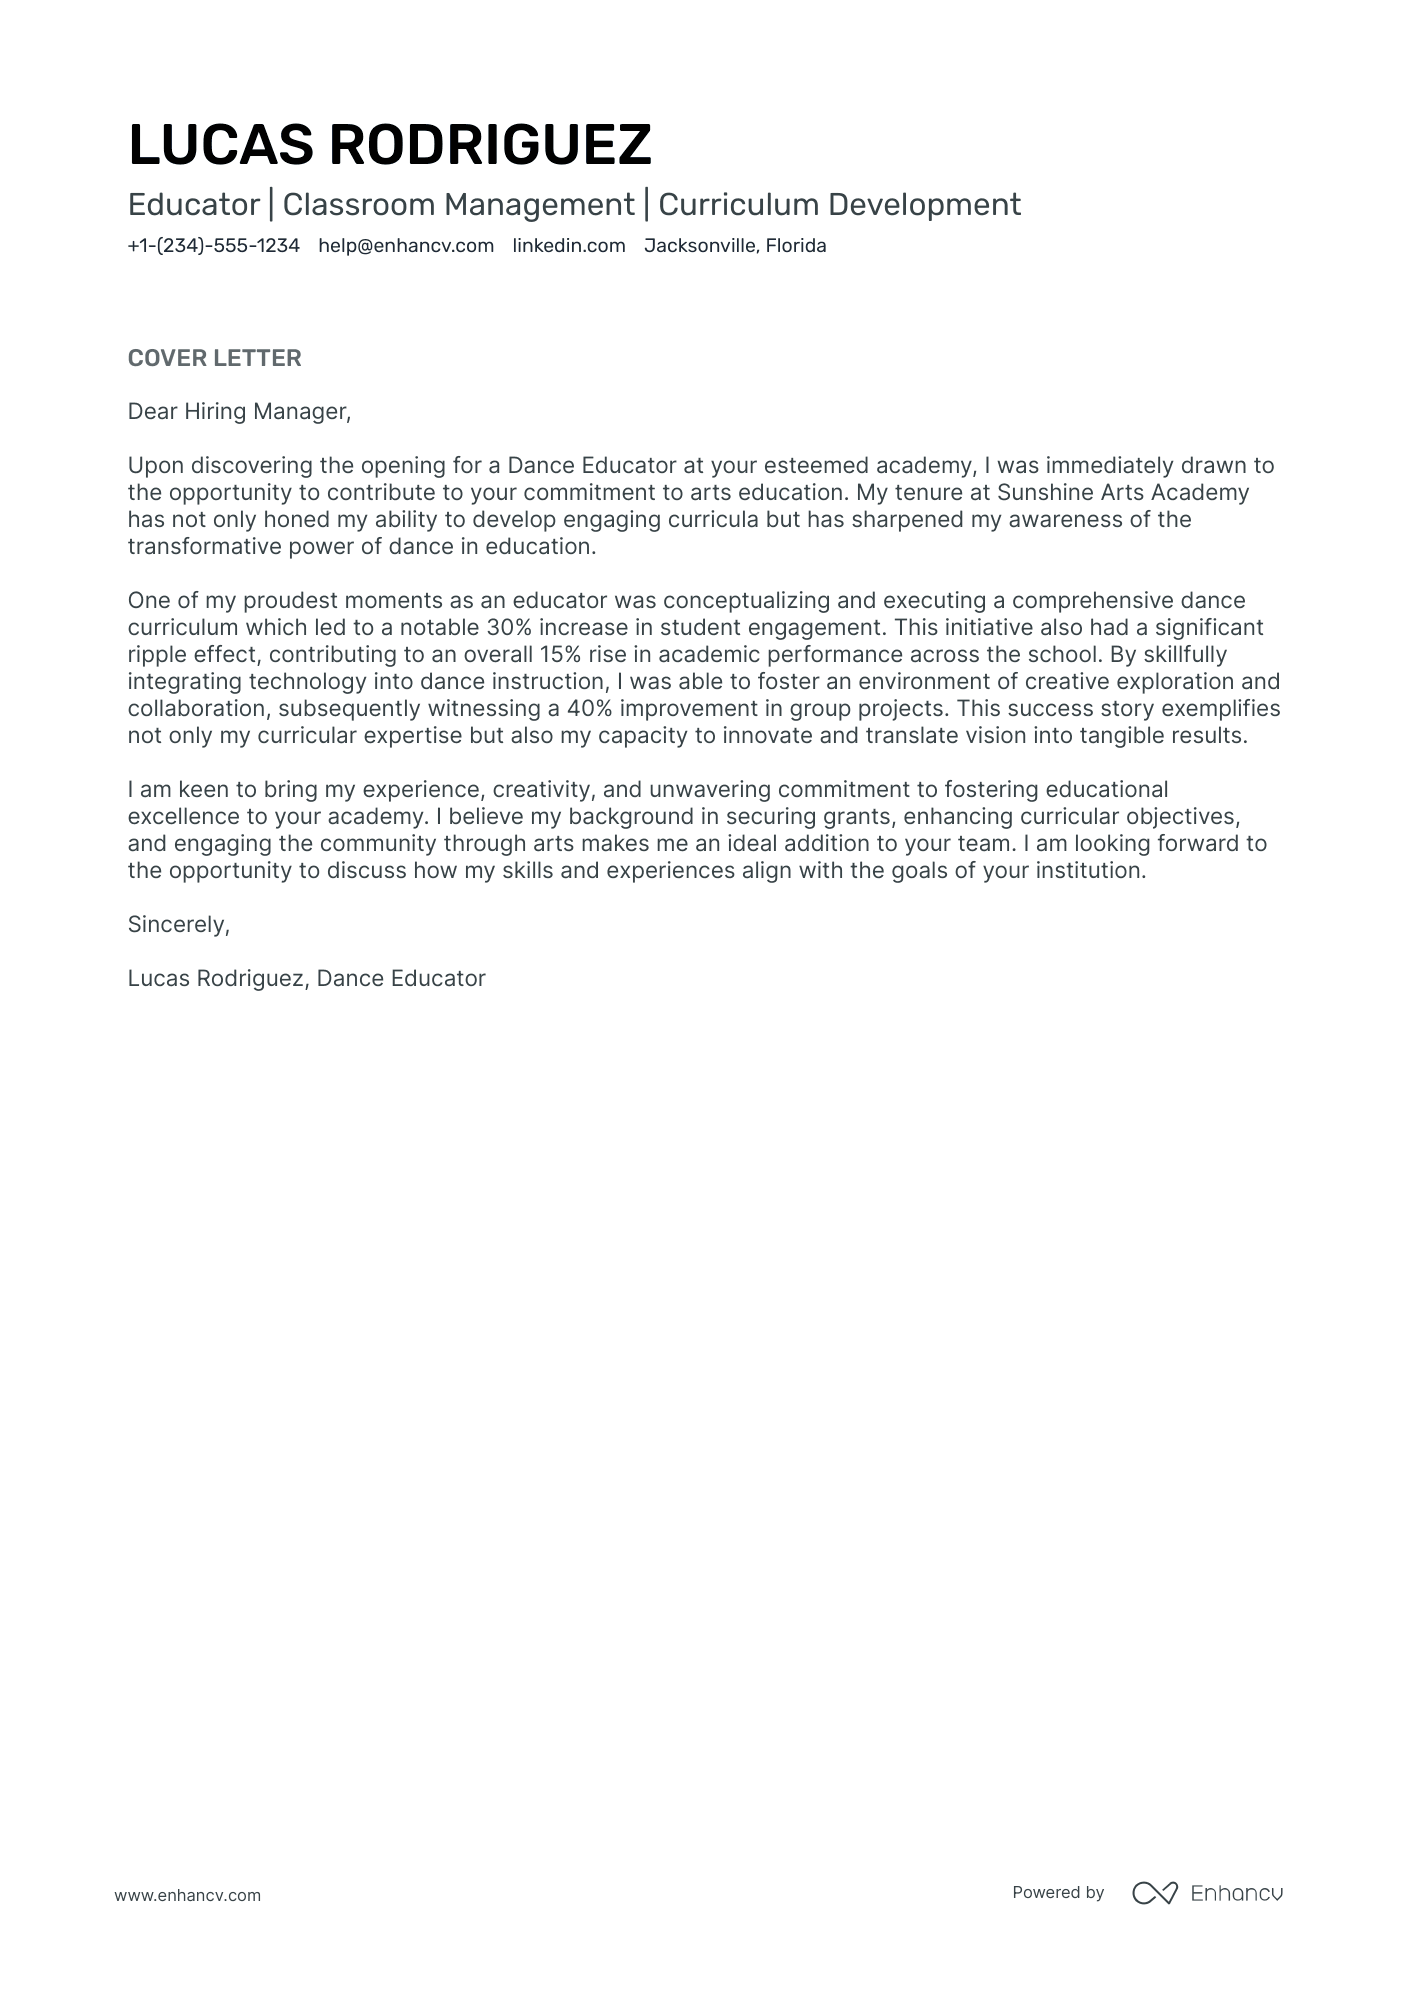 cover letter for business teacher position